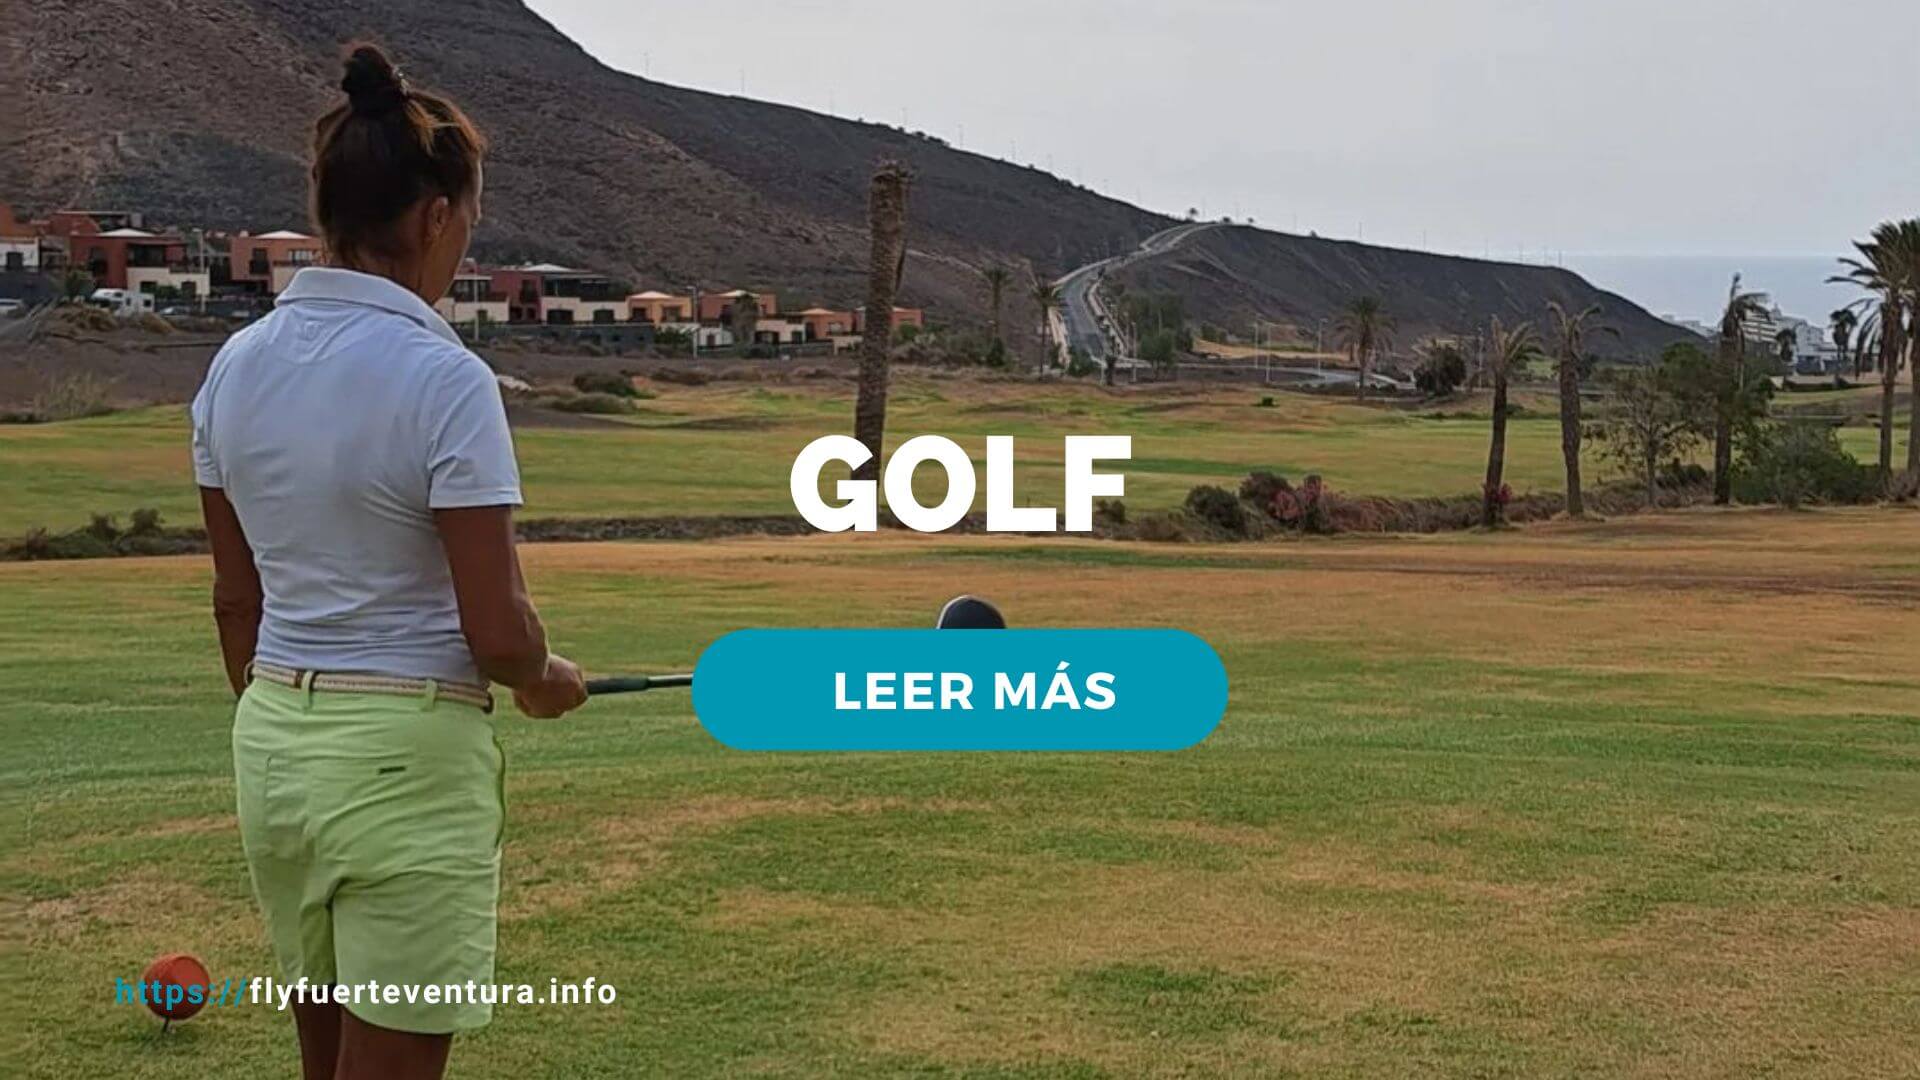 Golf en Fuerteventura Campos 18 y 9 hoyos